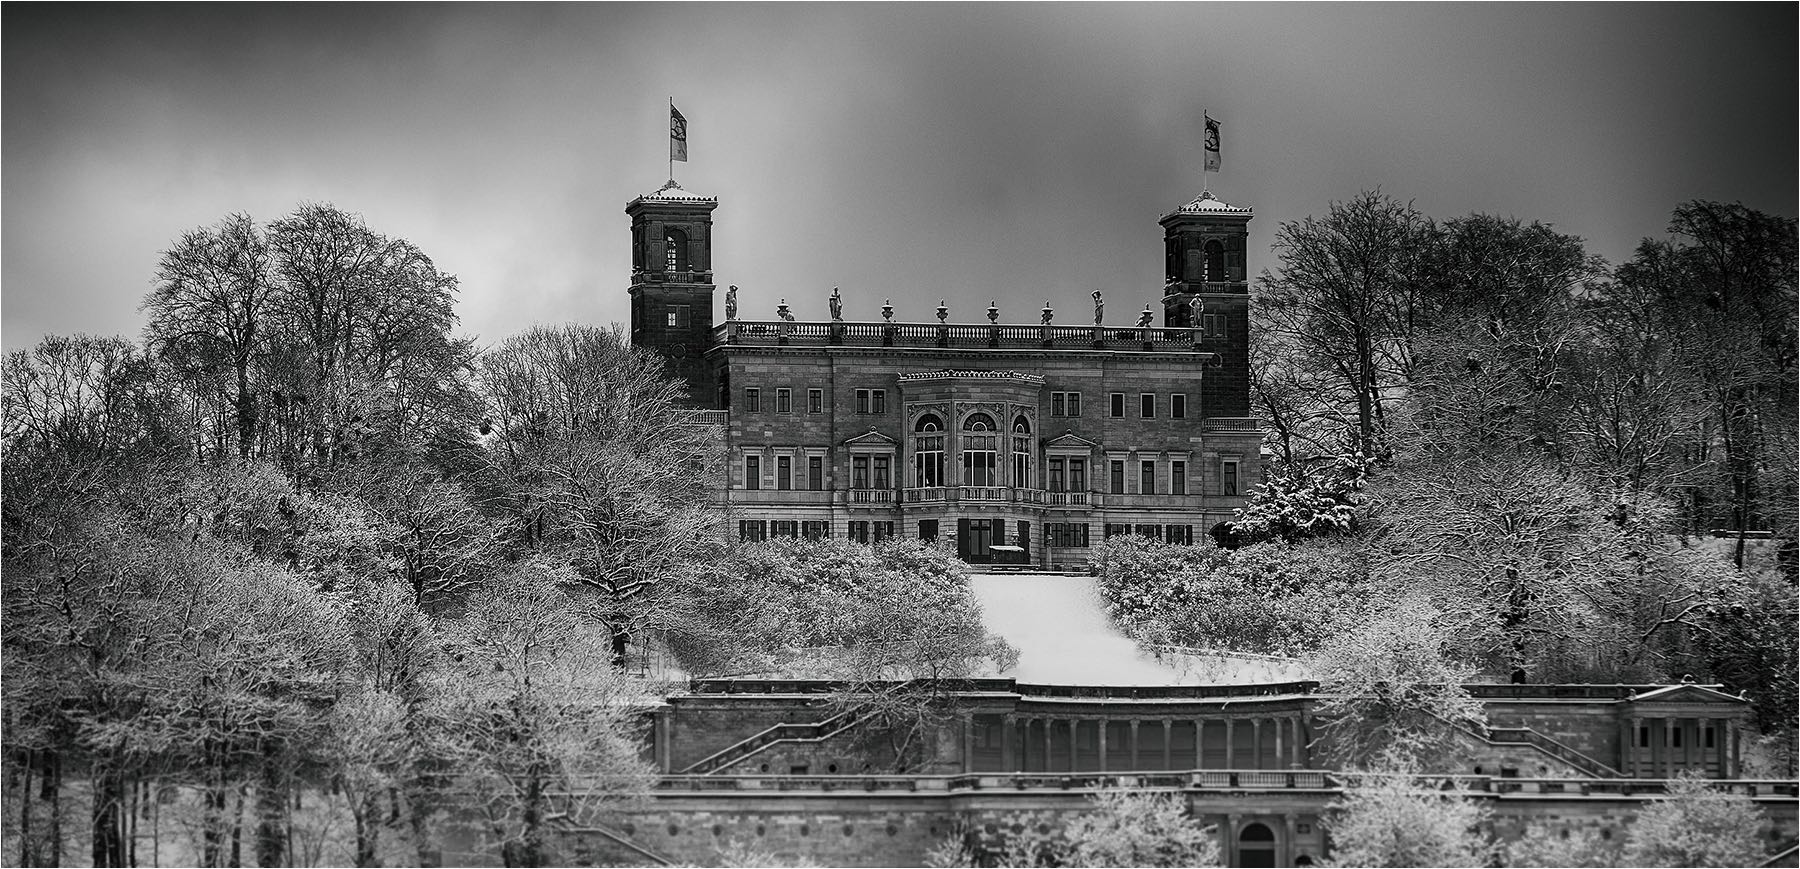  Architekturfotografie. Schloss Albrechtsburg in Dresden. Aufgenommen mit Mittelformat digital und available Light. 